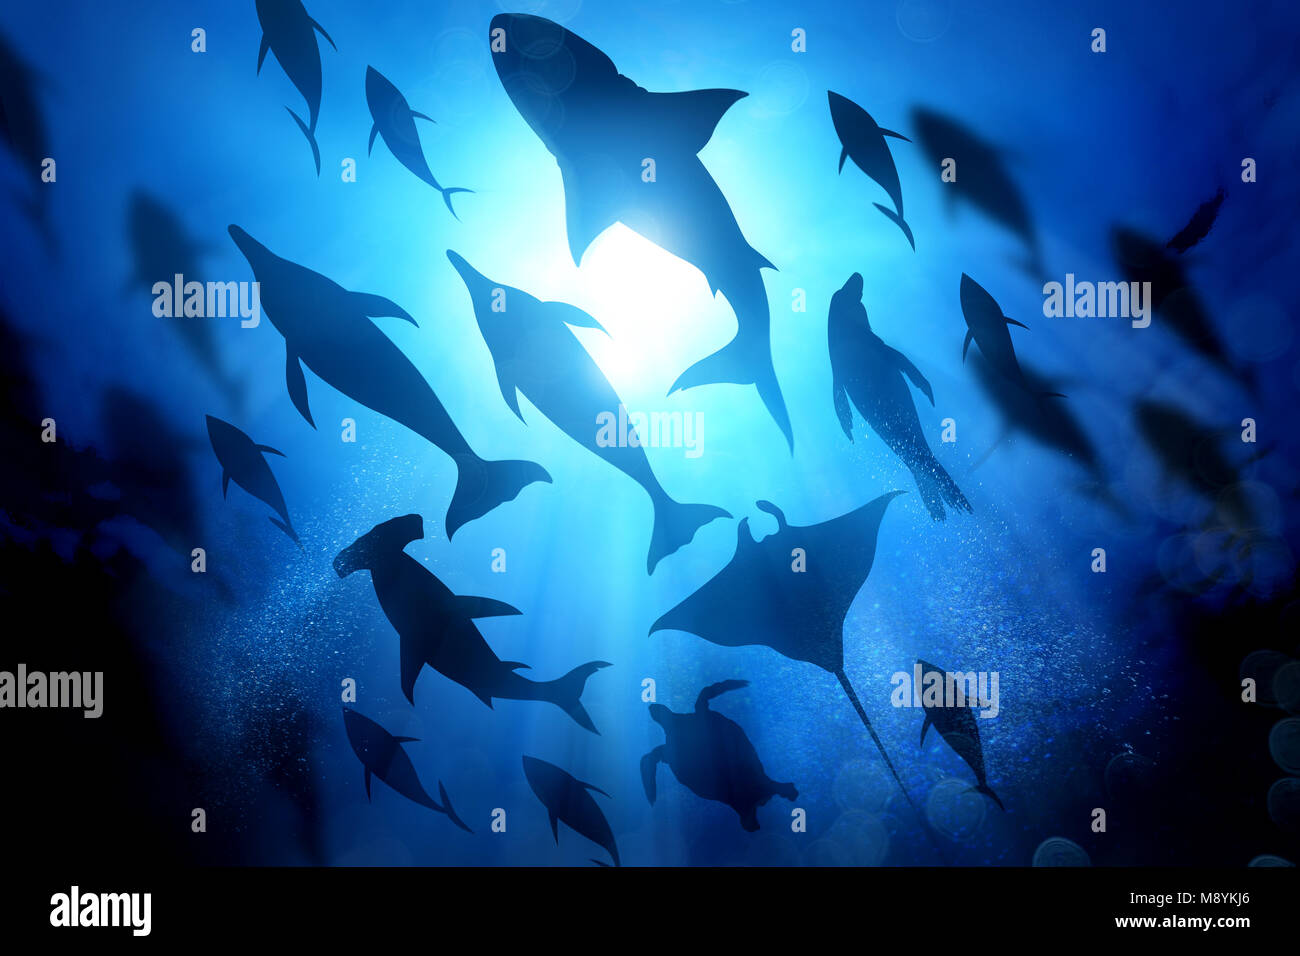 Eine Vielzahl von Marine und Meer leben Silhouetten unter den Wellen einschließlich Salz Wasser Delfine, Haie und Fische. Mixed media Abbildung. Stockfoto